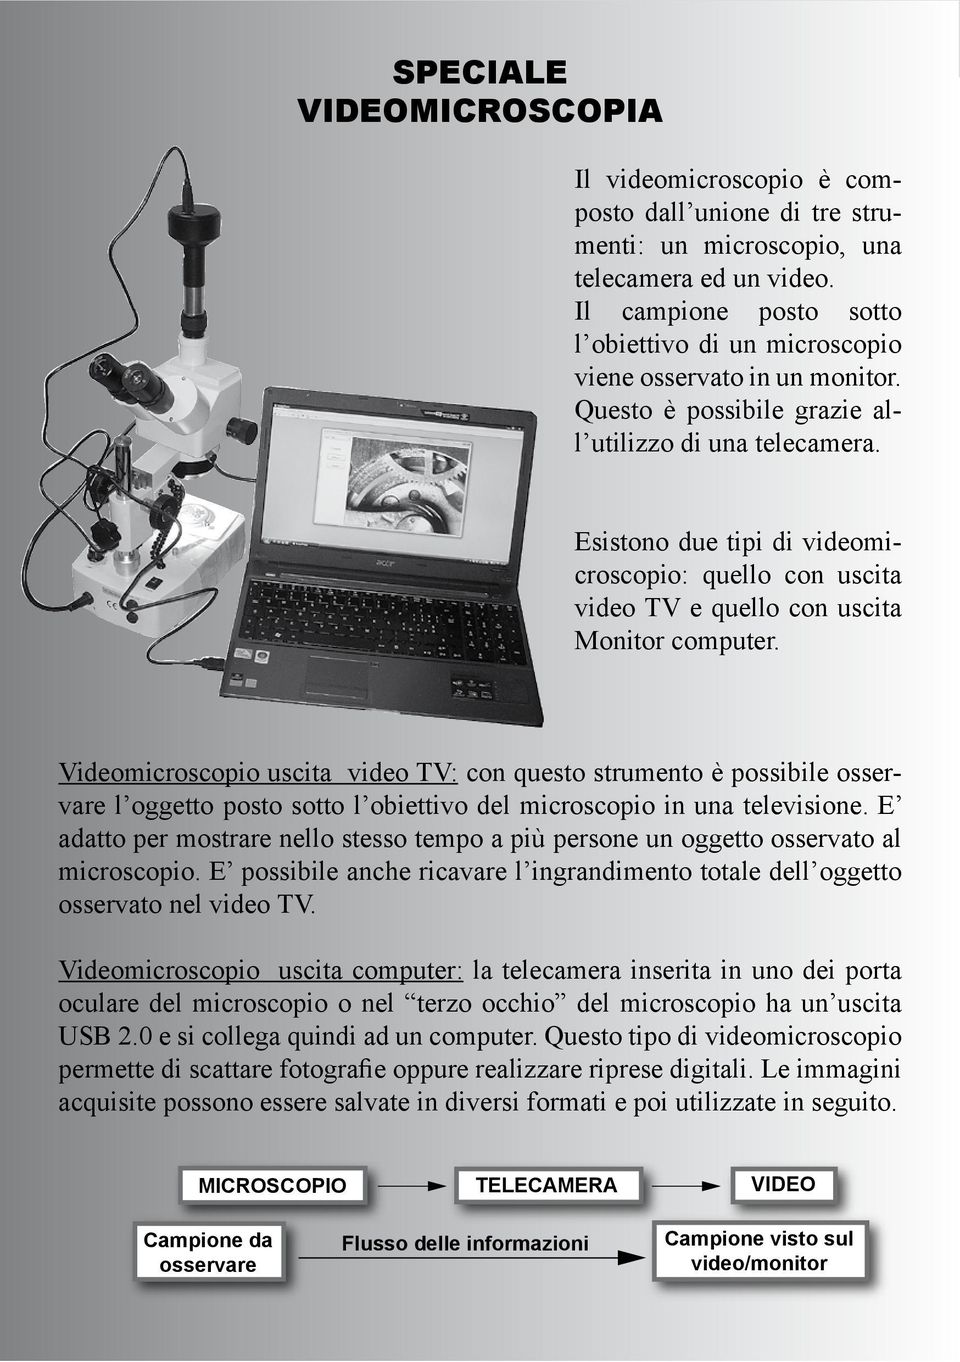 Esistono due tipi di videomicroscopio: quello con uscita video TV e quello con uscita Monitor computer.